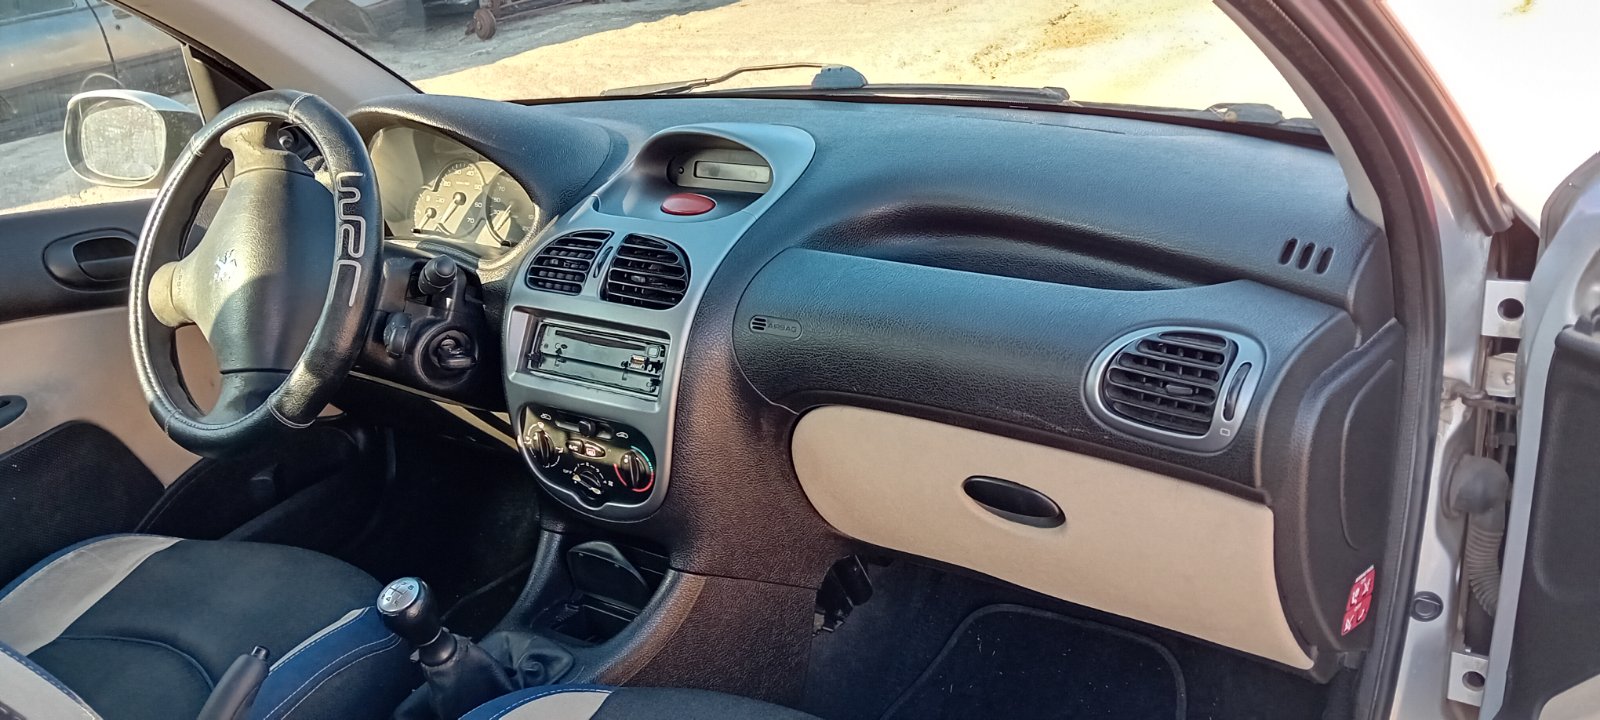 Κλειδαριά Μίζας Peugeot 206 ’04